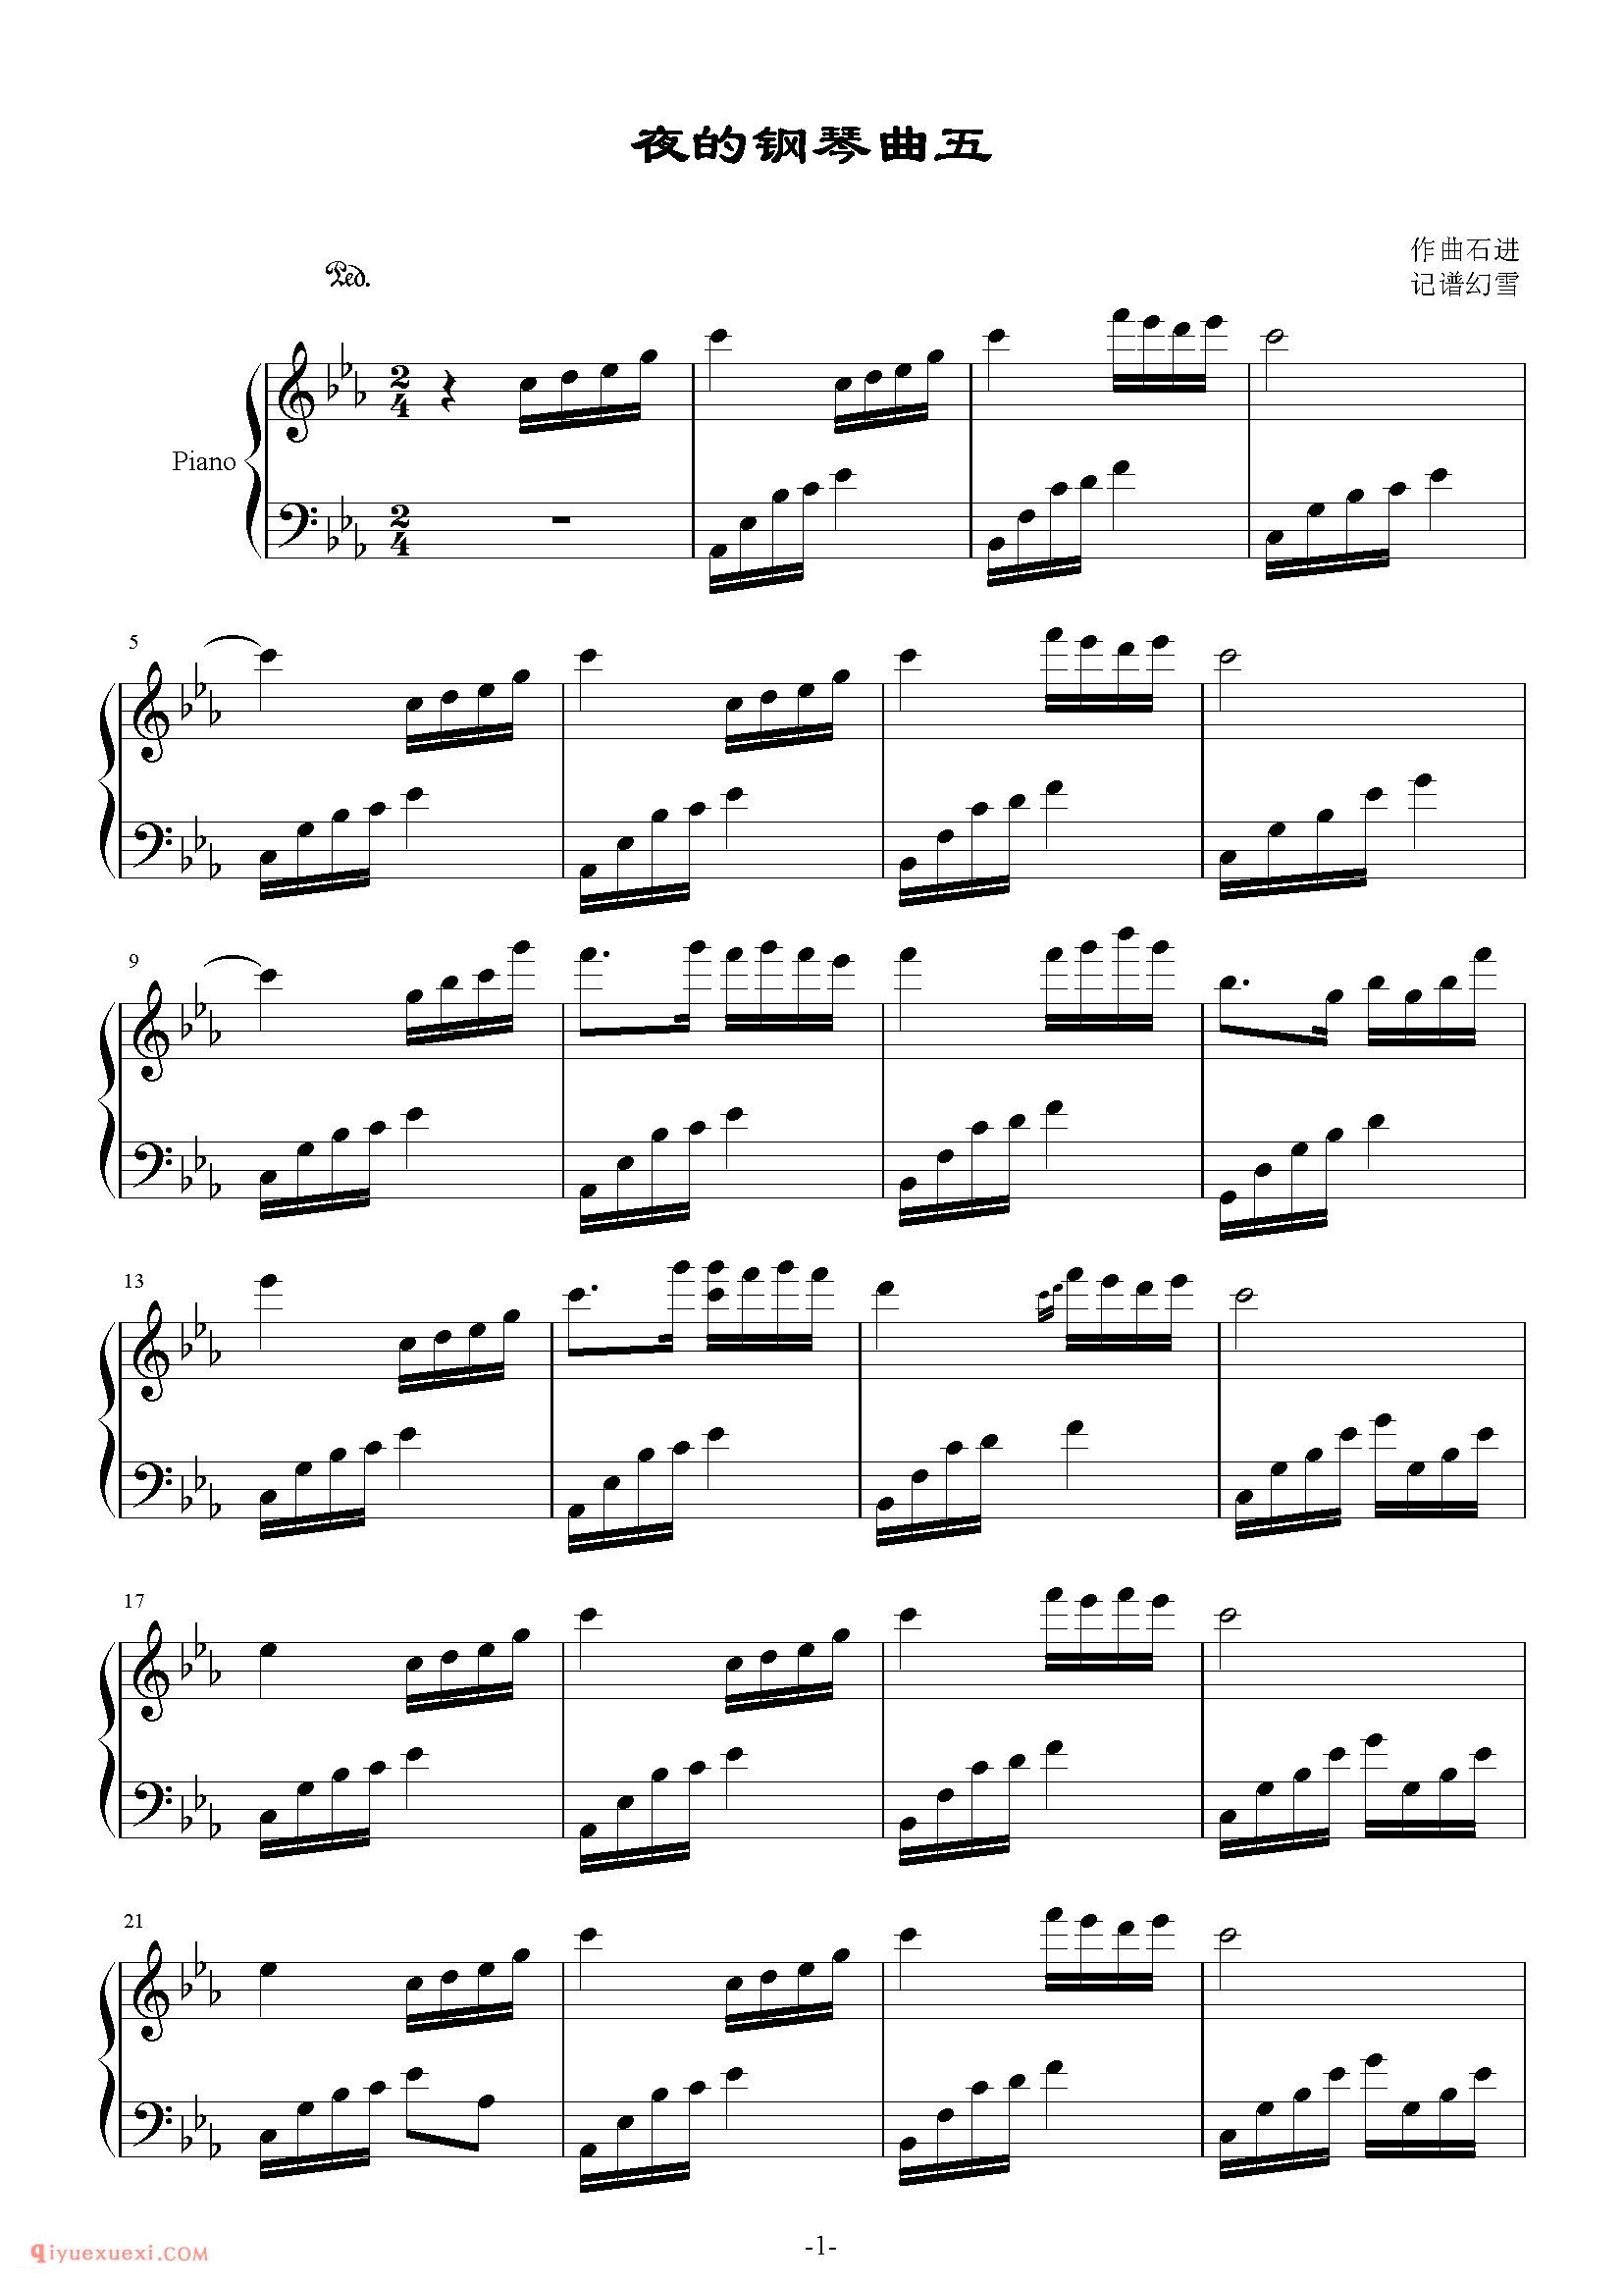 复杂电子琴曲目 | 夜的钢琴曲五(五线谱)